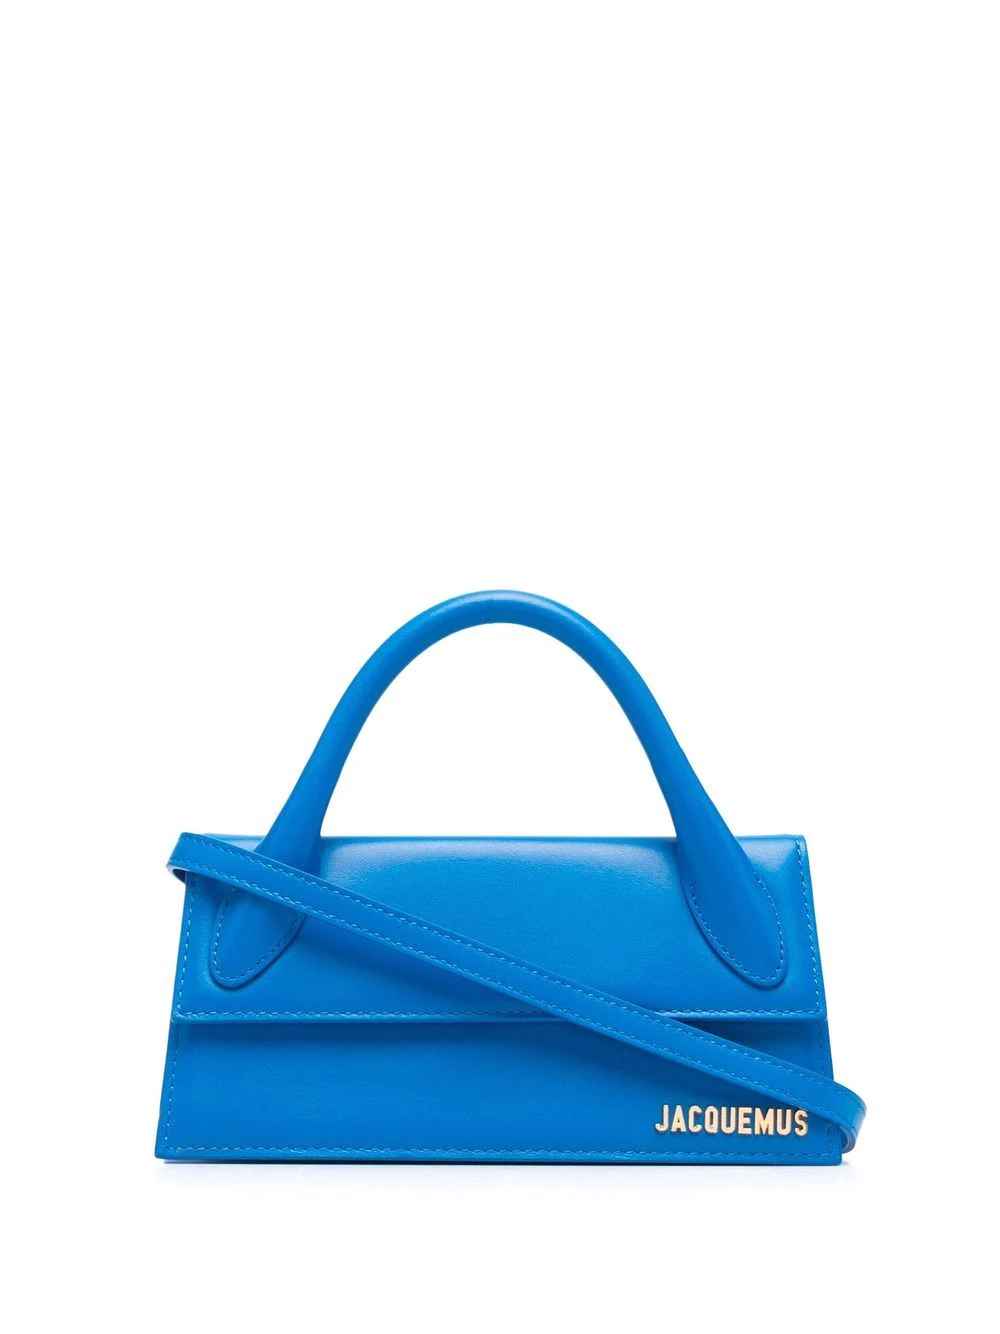 Jacquemus Le Chiquito Long Bag Blue